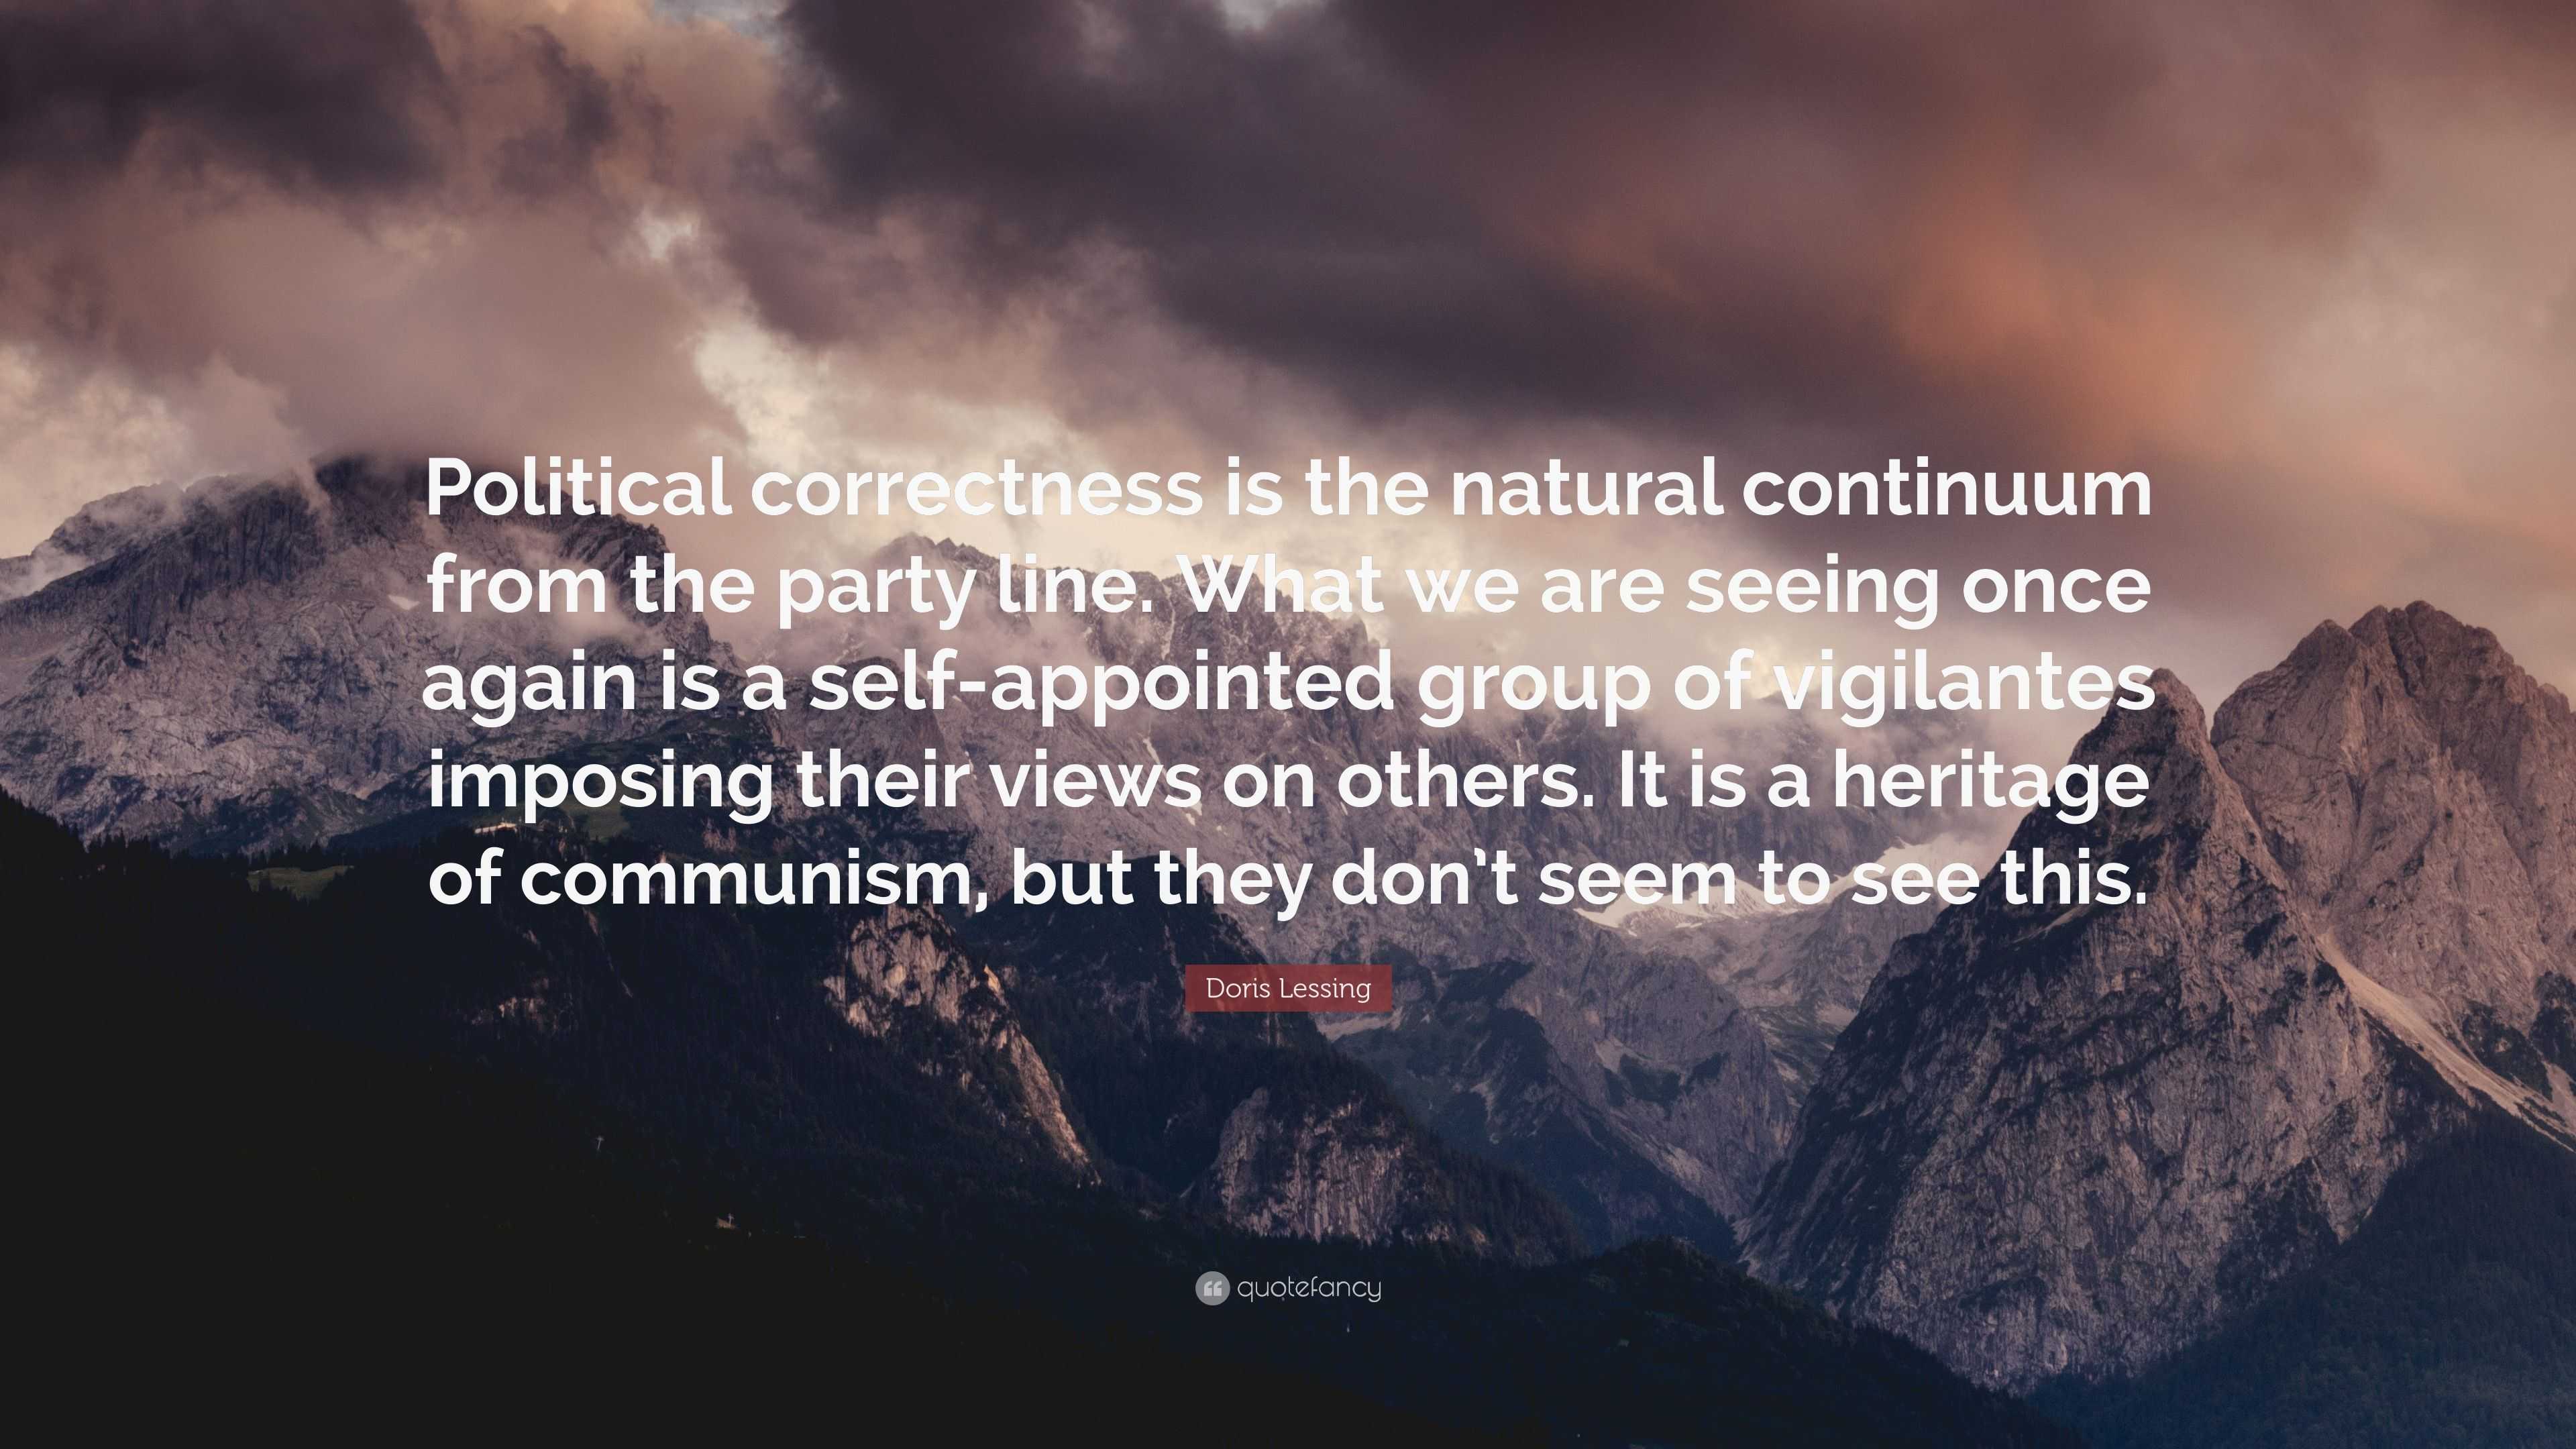 Doris Lessing Quote: “Political correctness is the natural continuum ...